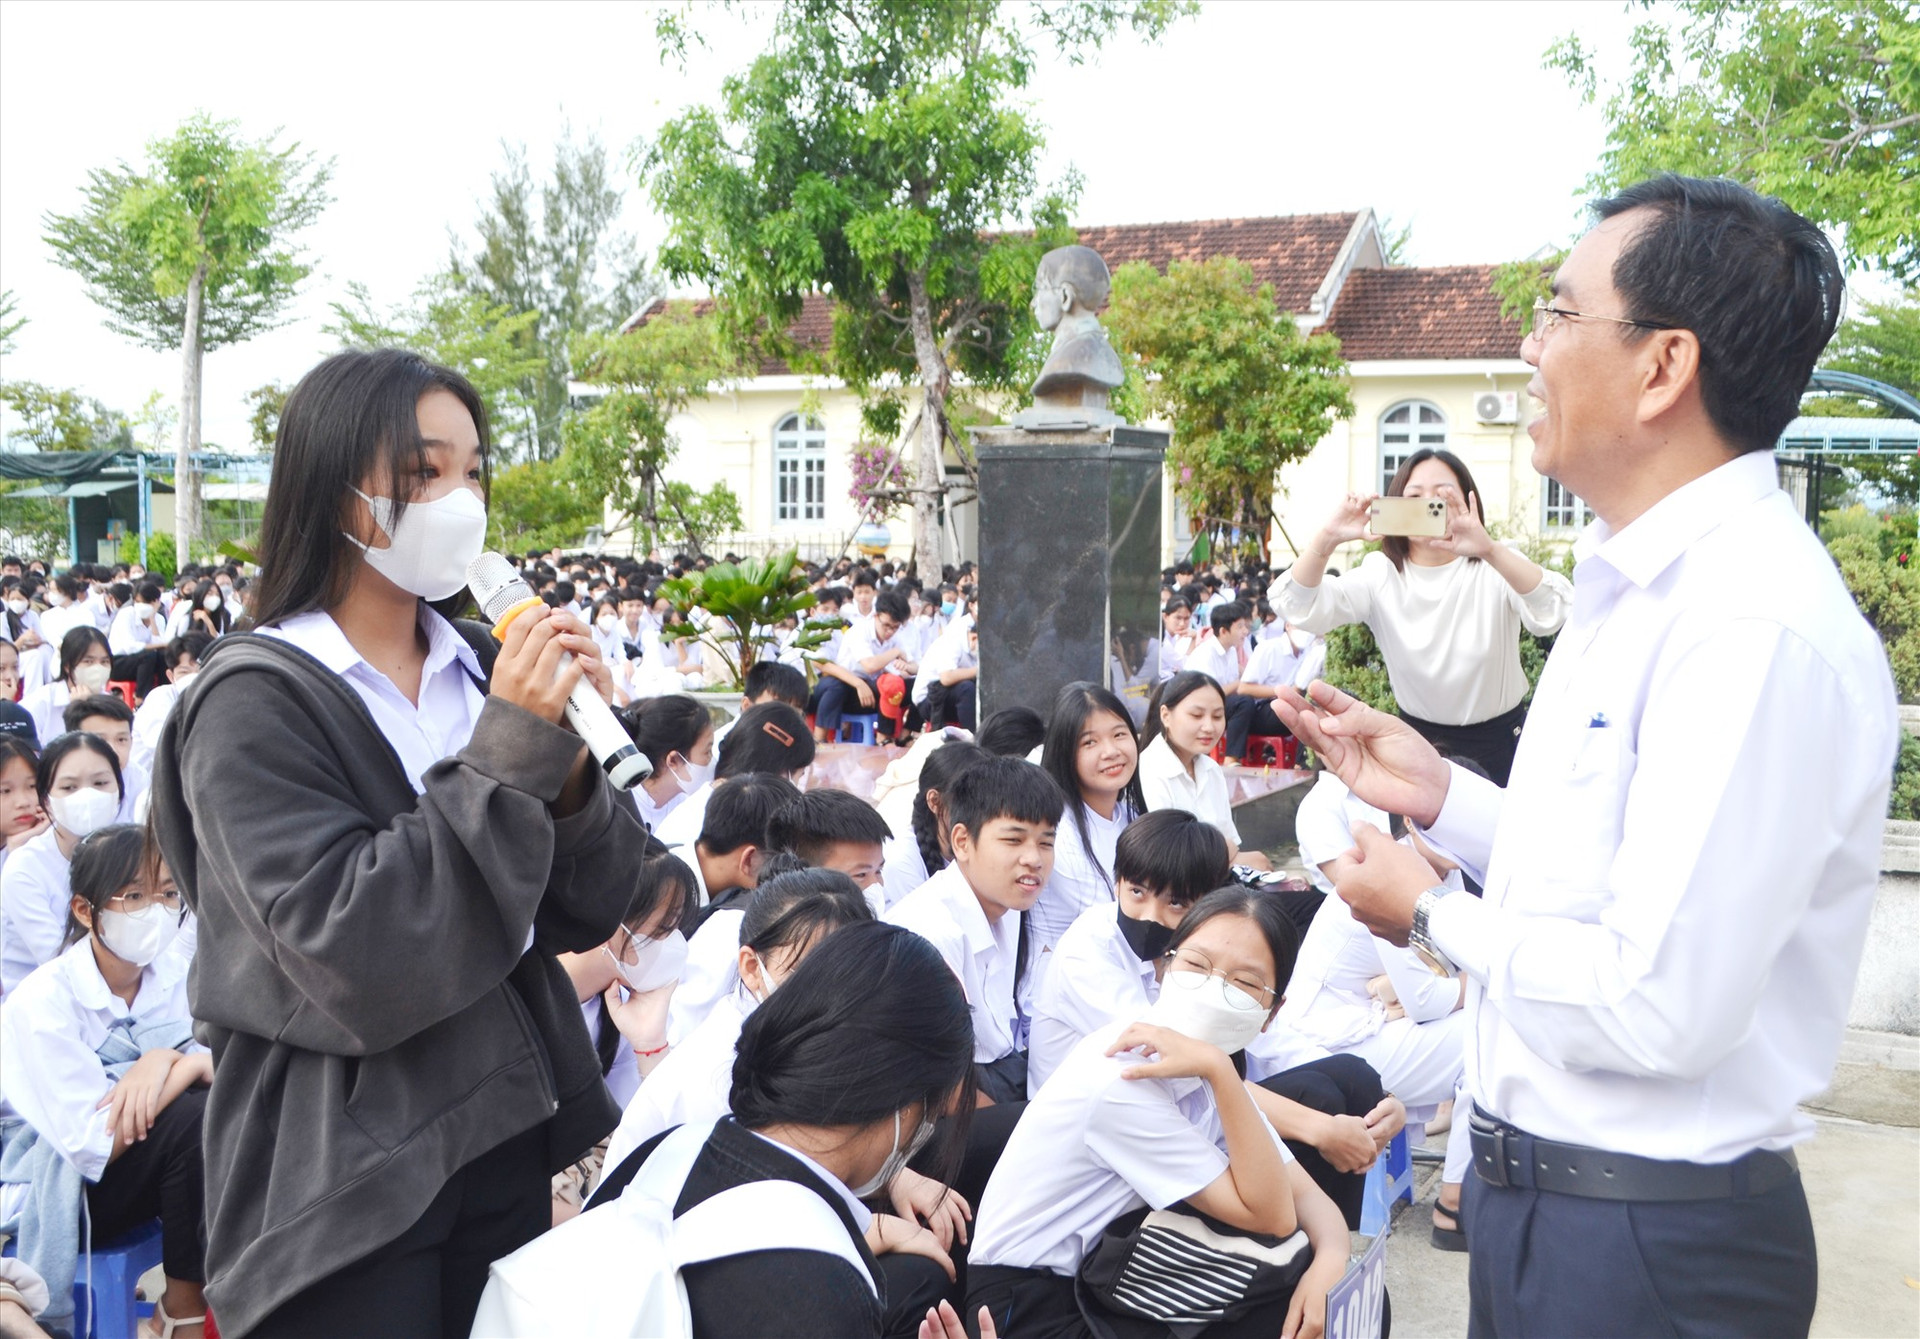 Chánh Văn phòng Ban ATGT tỉnh - ông Phan Đức Tiễn nghe học sinh trả lời kiến thức tại một buổi tuyên truyền pháp luật ATGT trong trường học. Ảnh: C.T